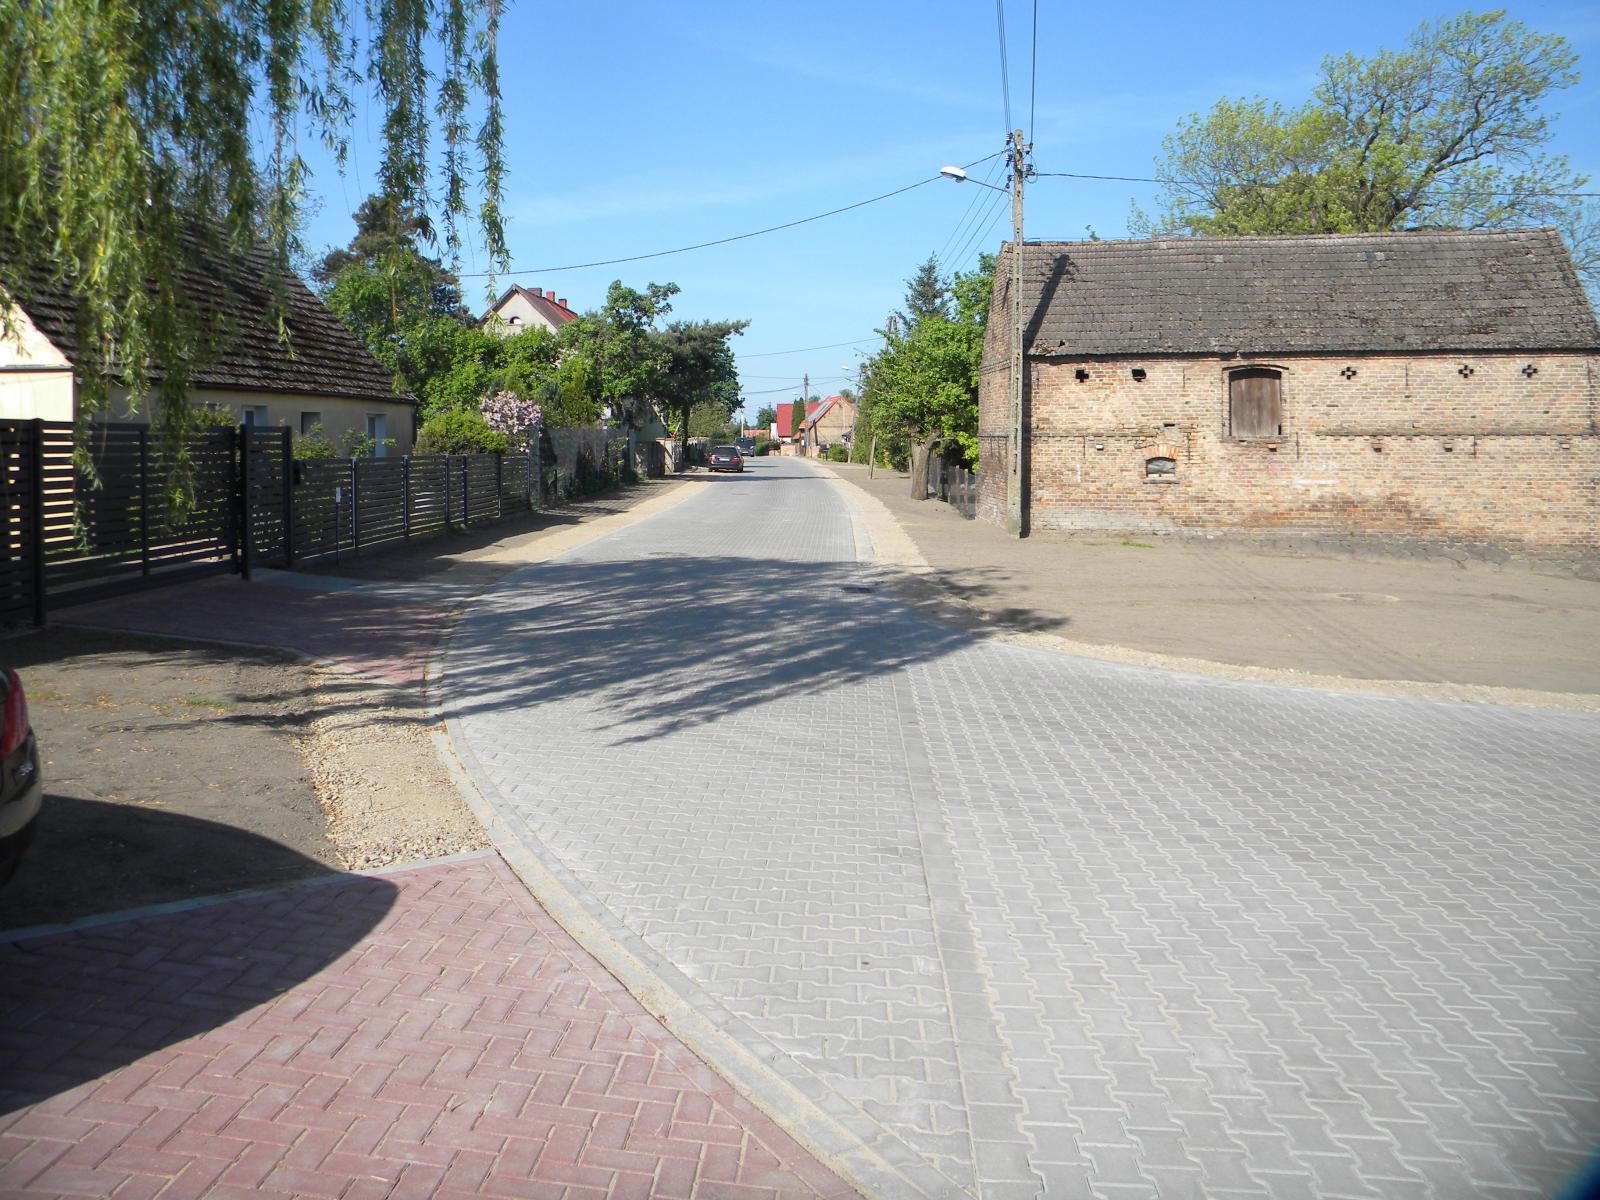 Droga zrobiona szarej kostki polbrukowej, po bokach budynki